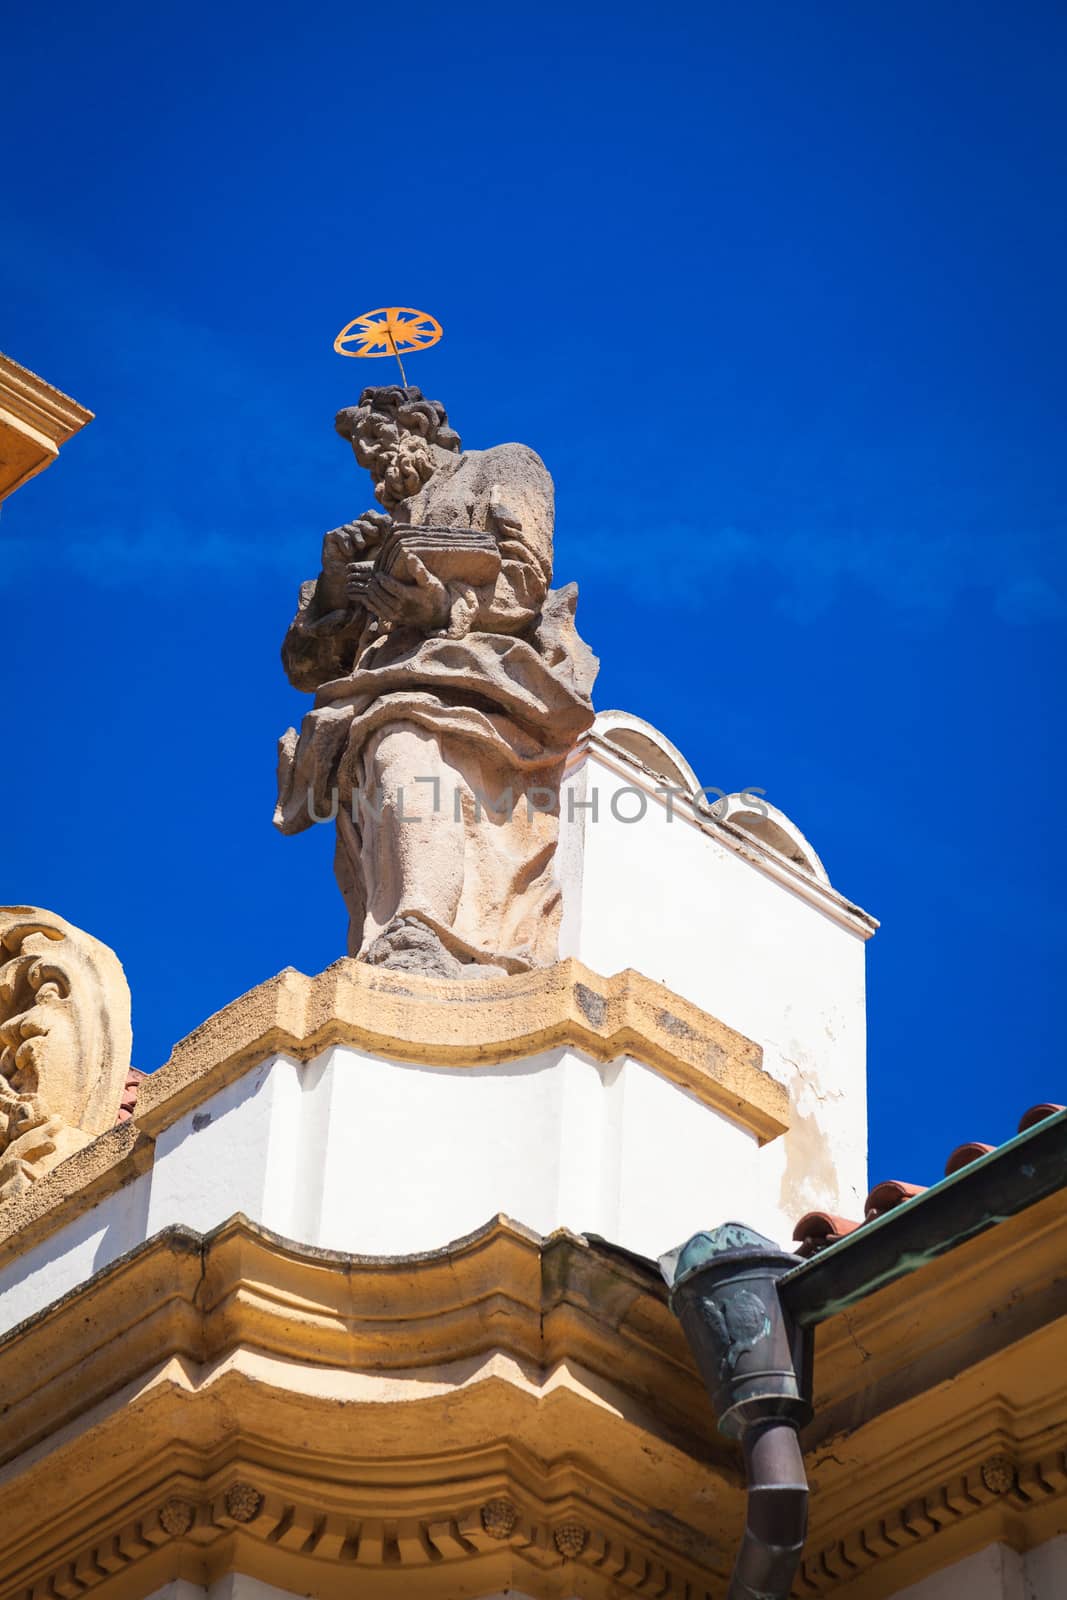 Facade of the Loreto Church in Prague